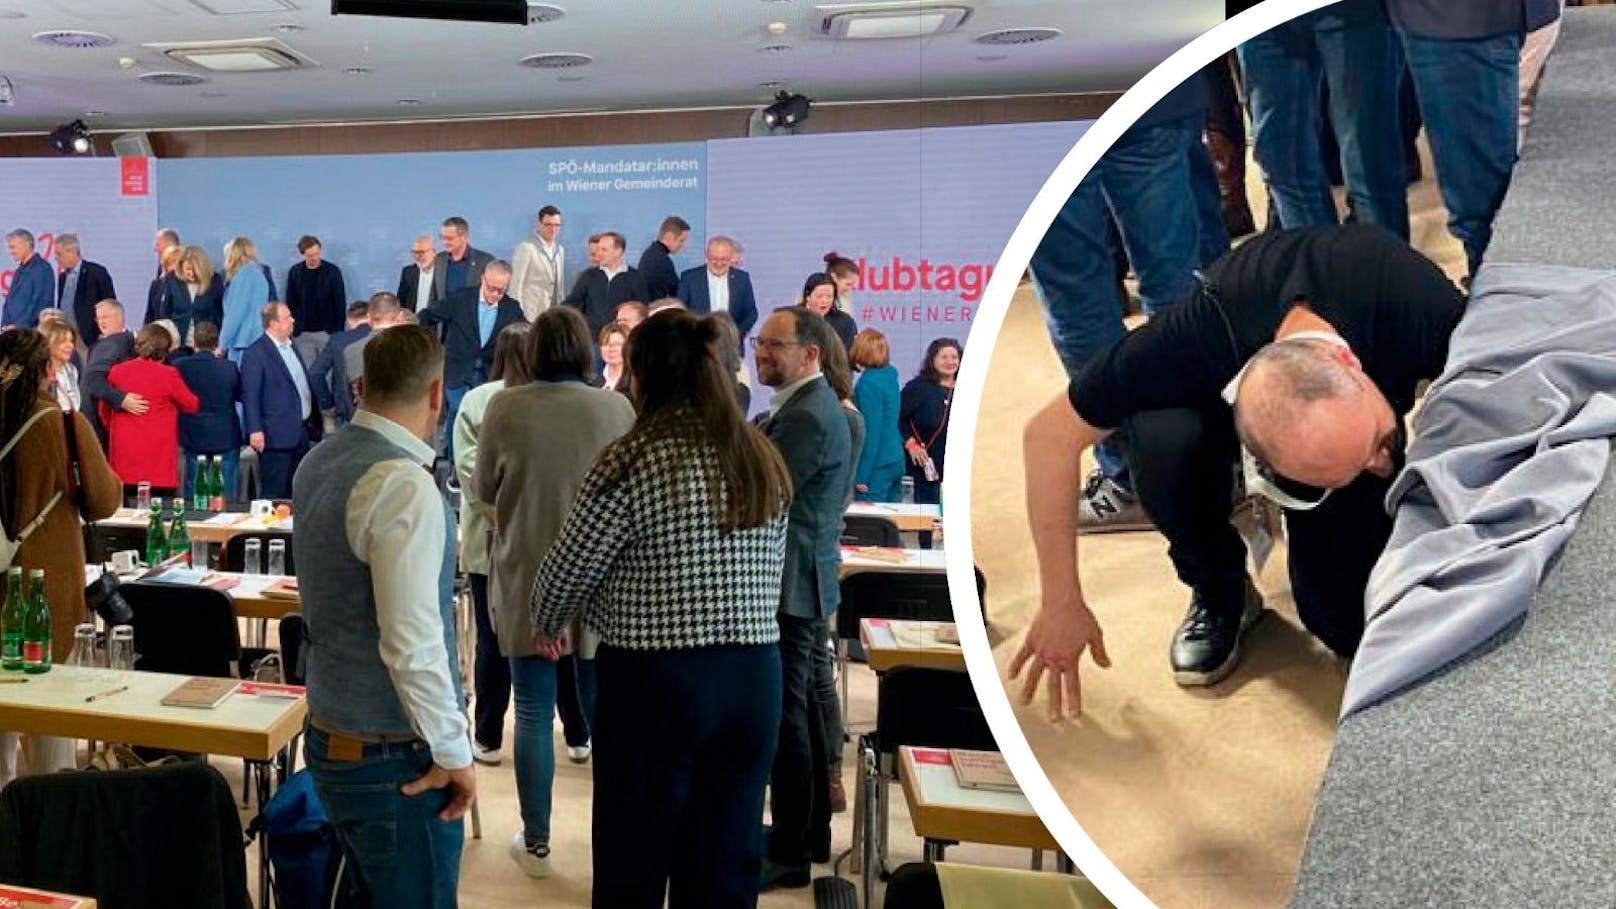 "Politisches Gewicht zu hoch" – SPÖ-Bühne bricht ein